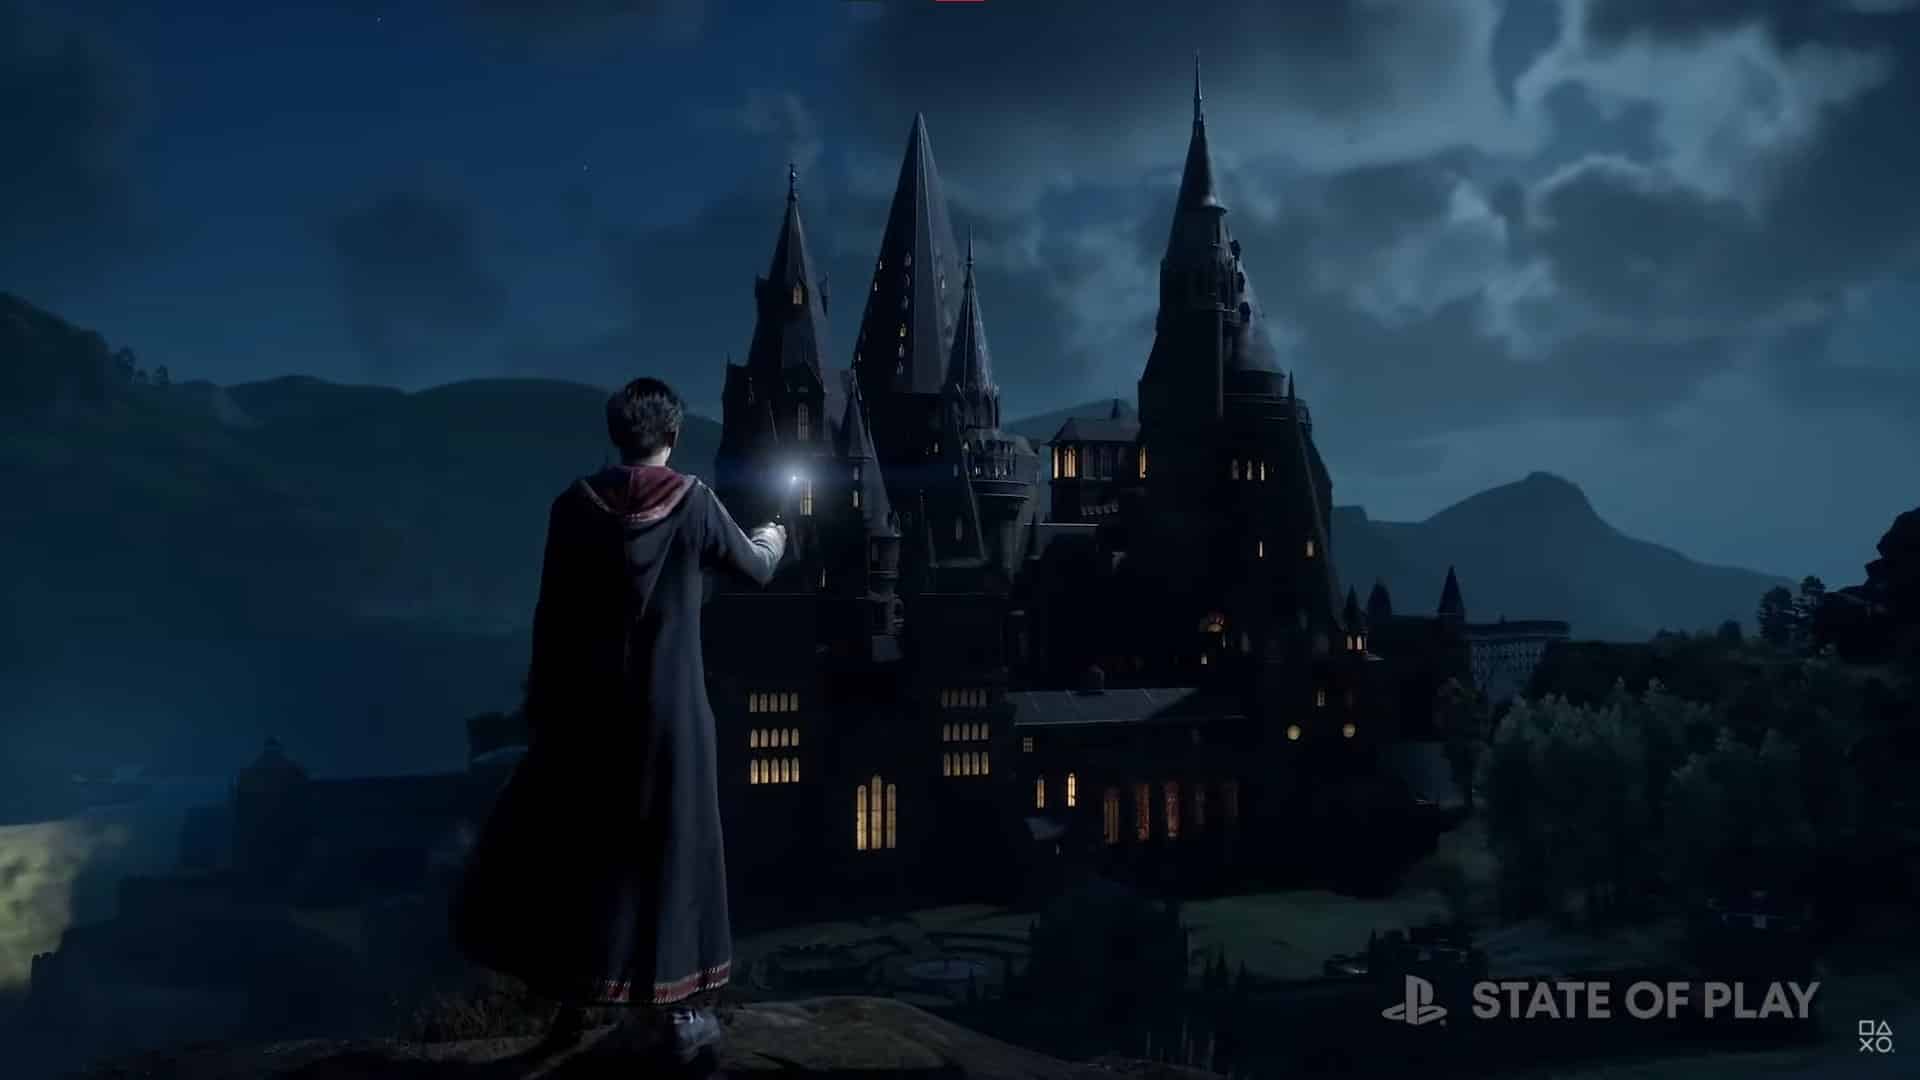 Hogwarts Legacy tem detalhes de sua jogabilidade revelados